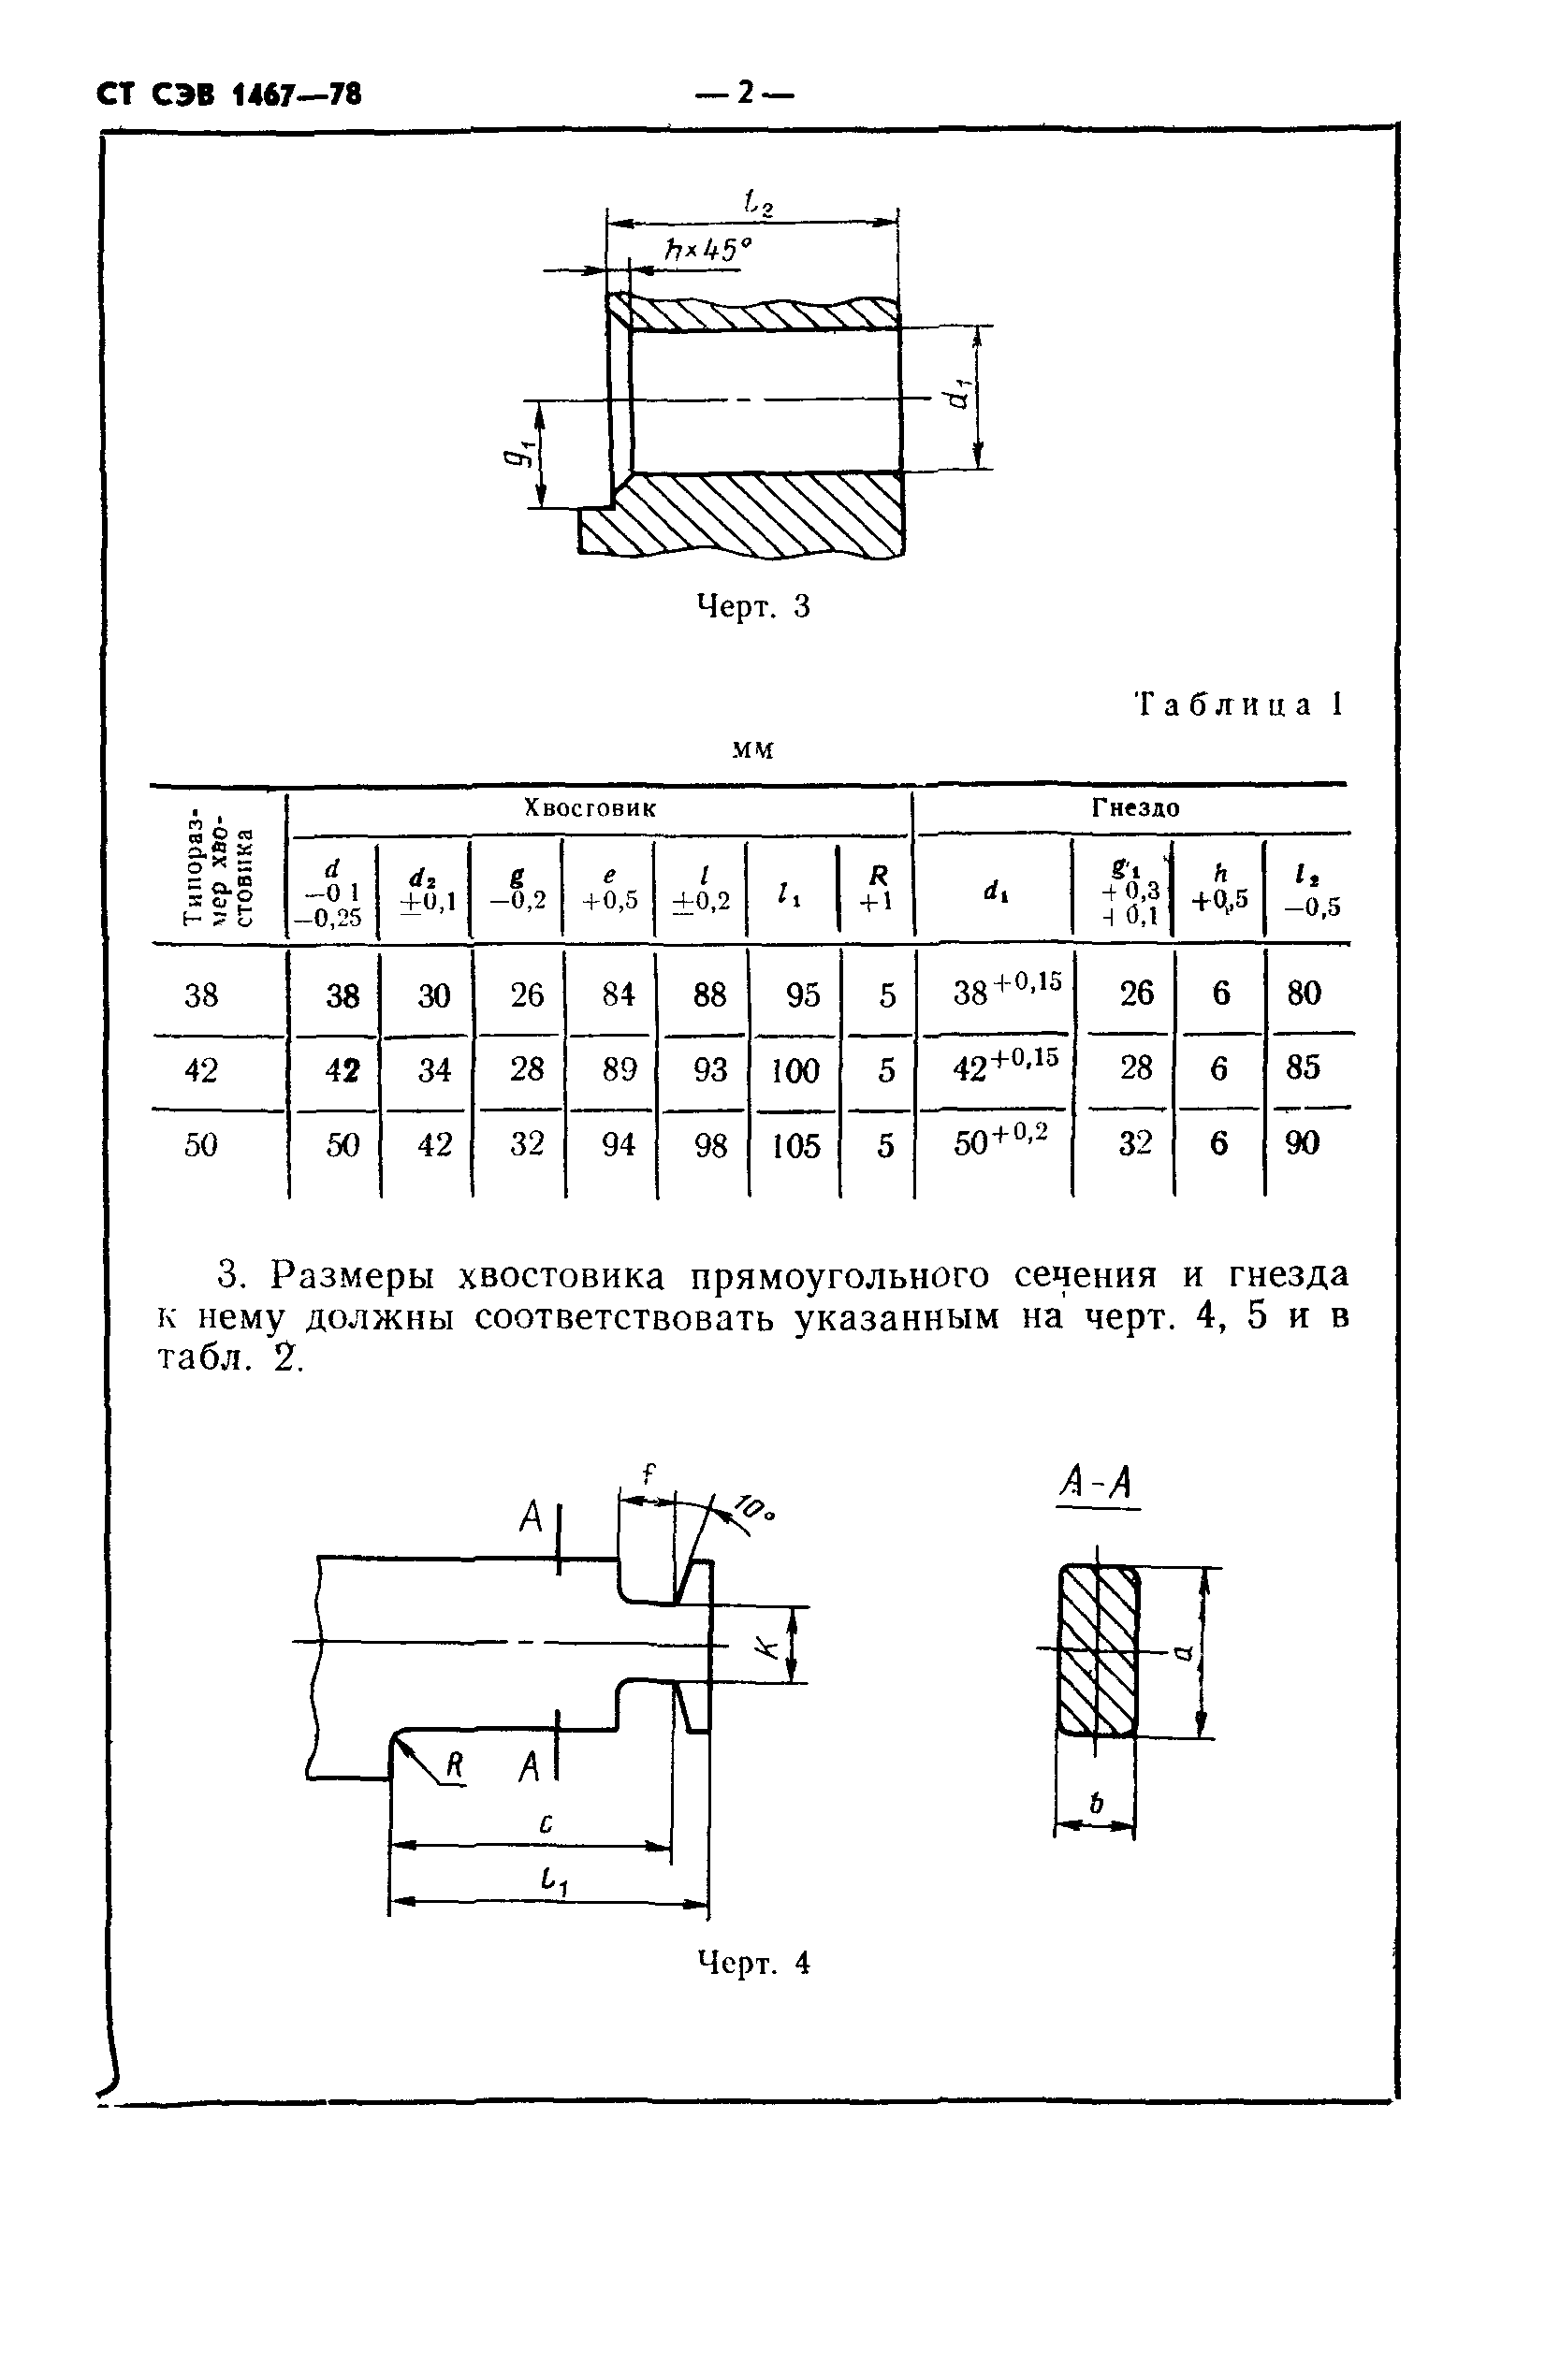 СТ СЭВ 1467-78